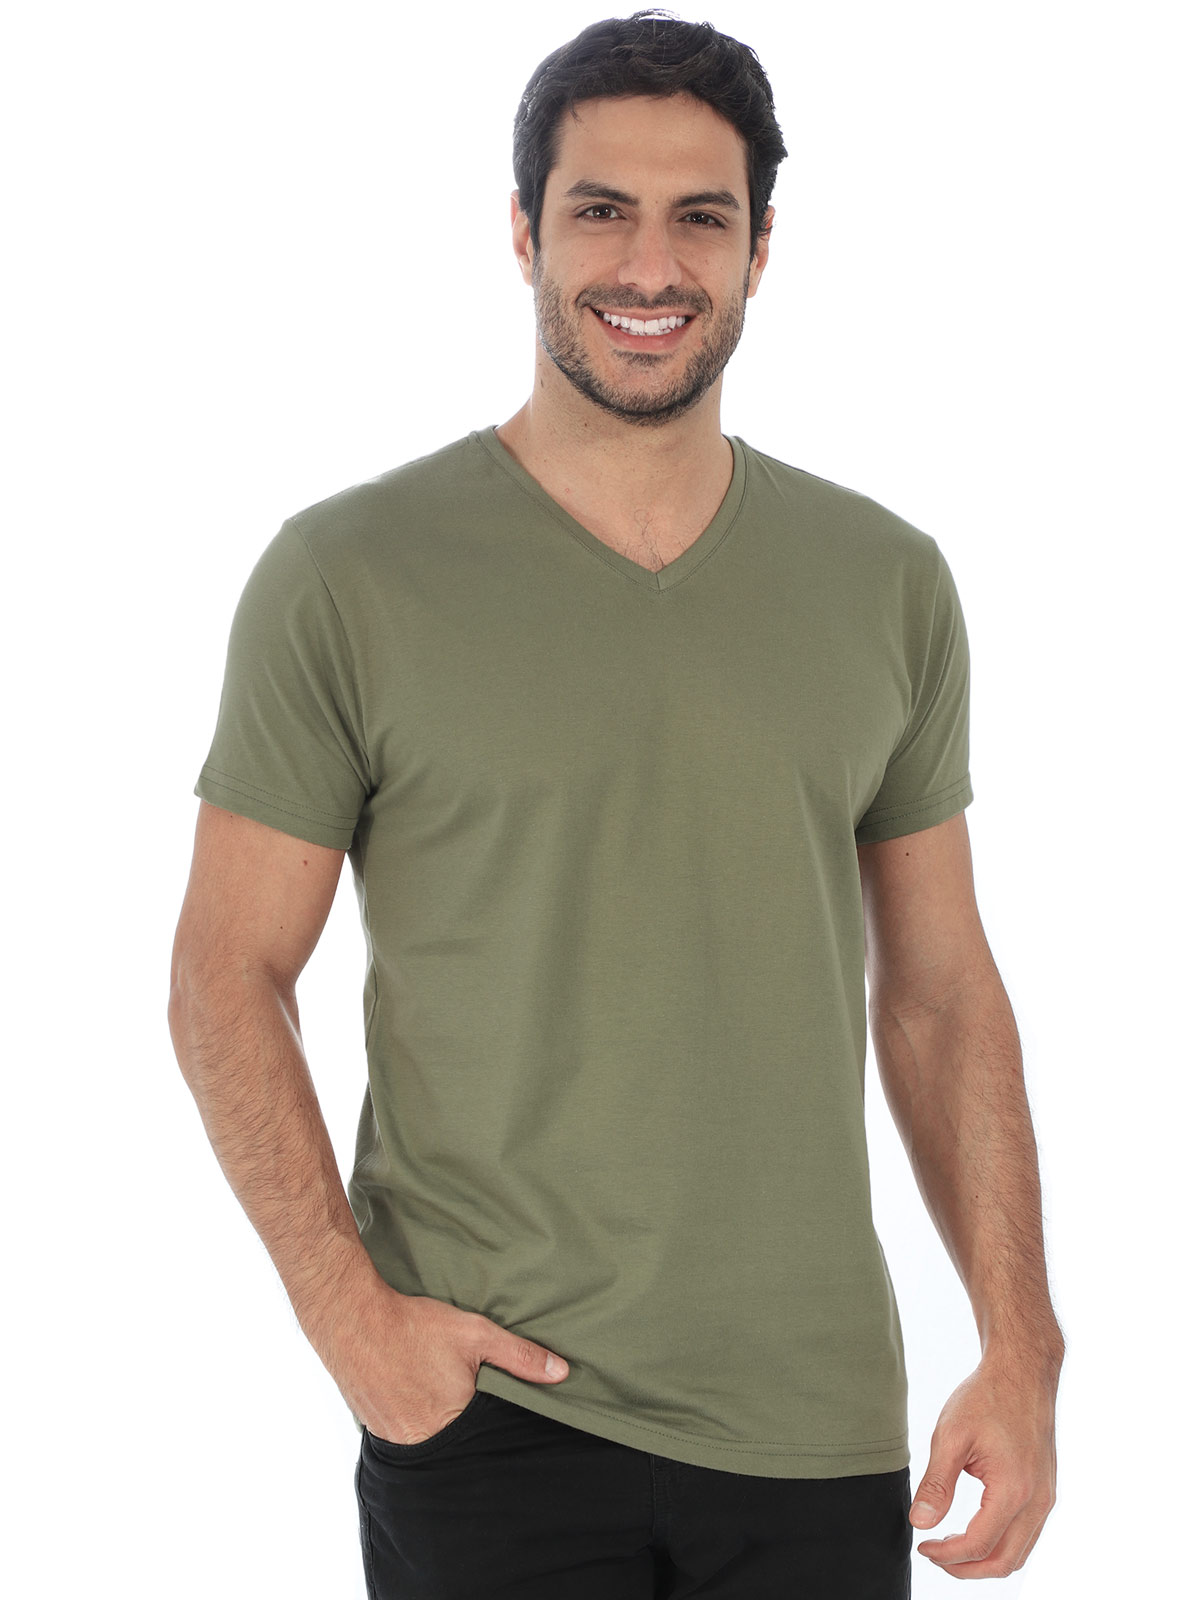 Camiseta Masculina Decote V. Algodão Slim Fit Bambú